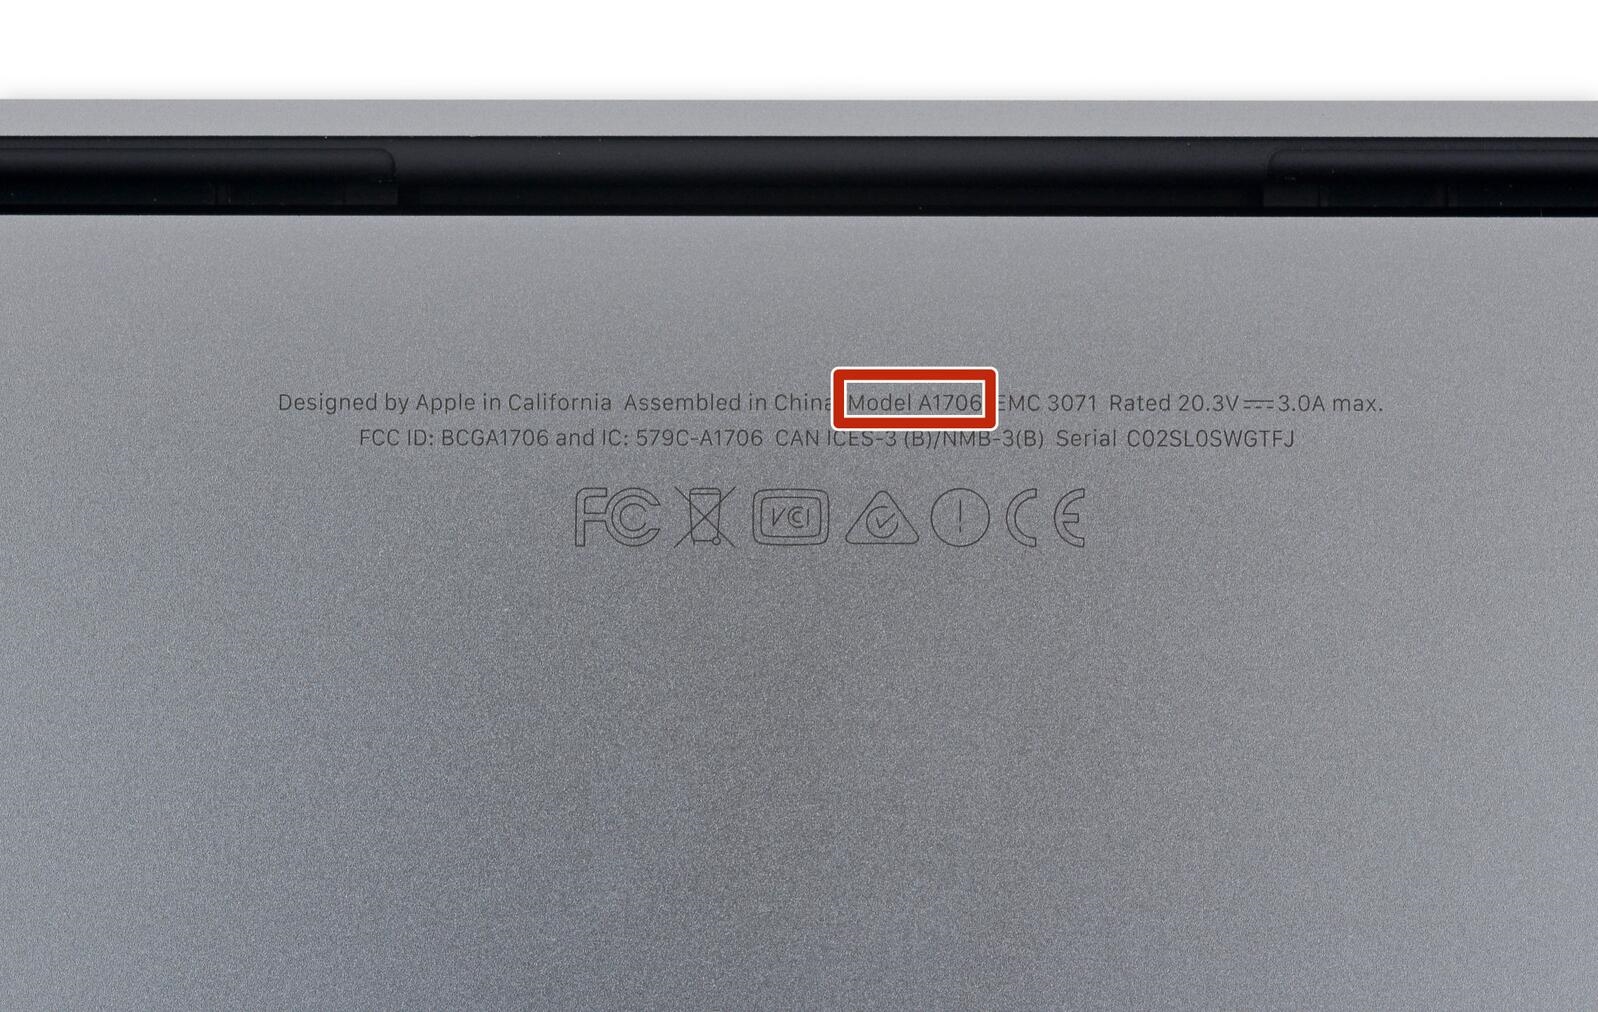 Macbook Pro A1706 A1708触摸板更换教程 区分年份吗？换触摸板后风扇狂转 不能进入系统 键盘失灵怎么办？重置SMC有什么作用？